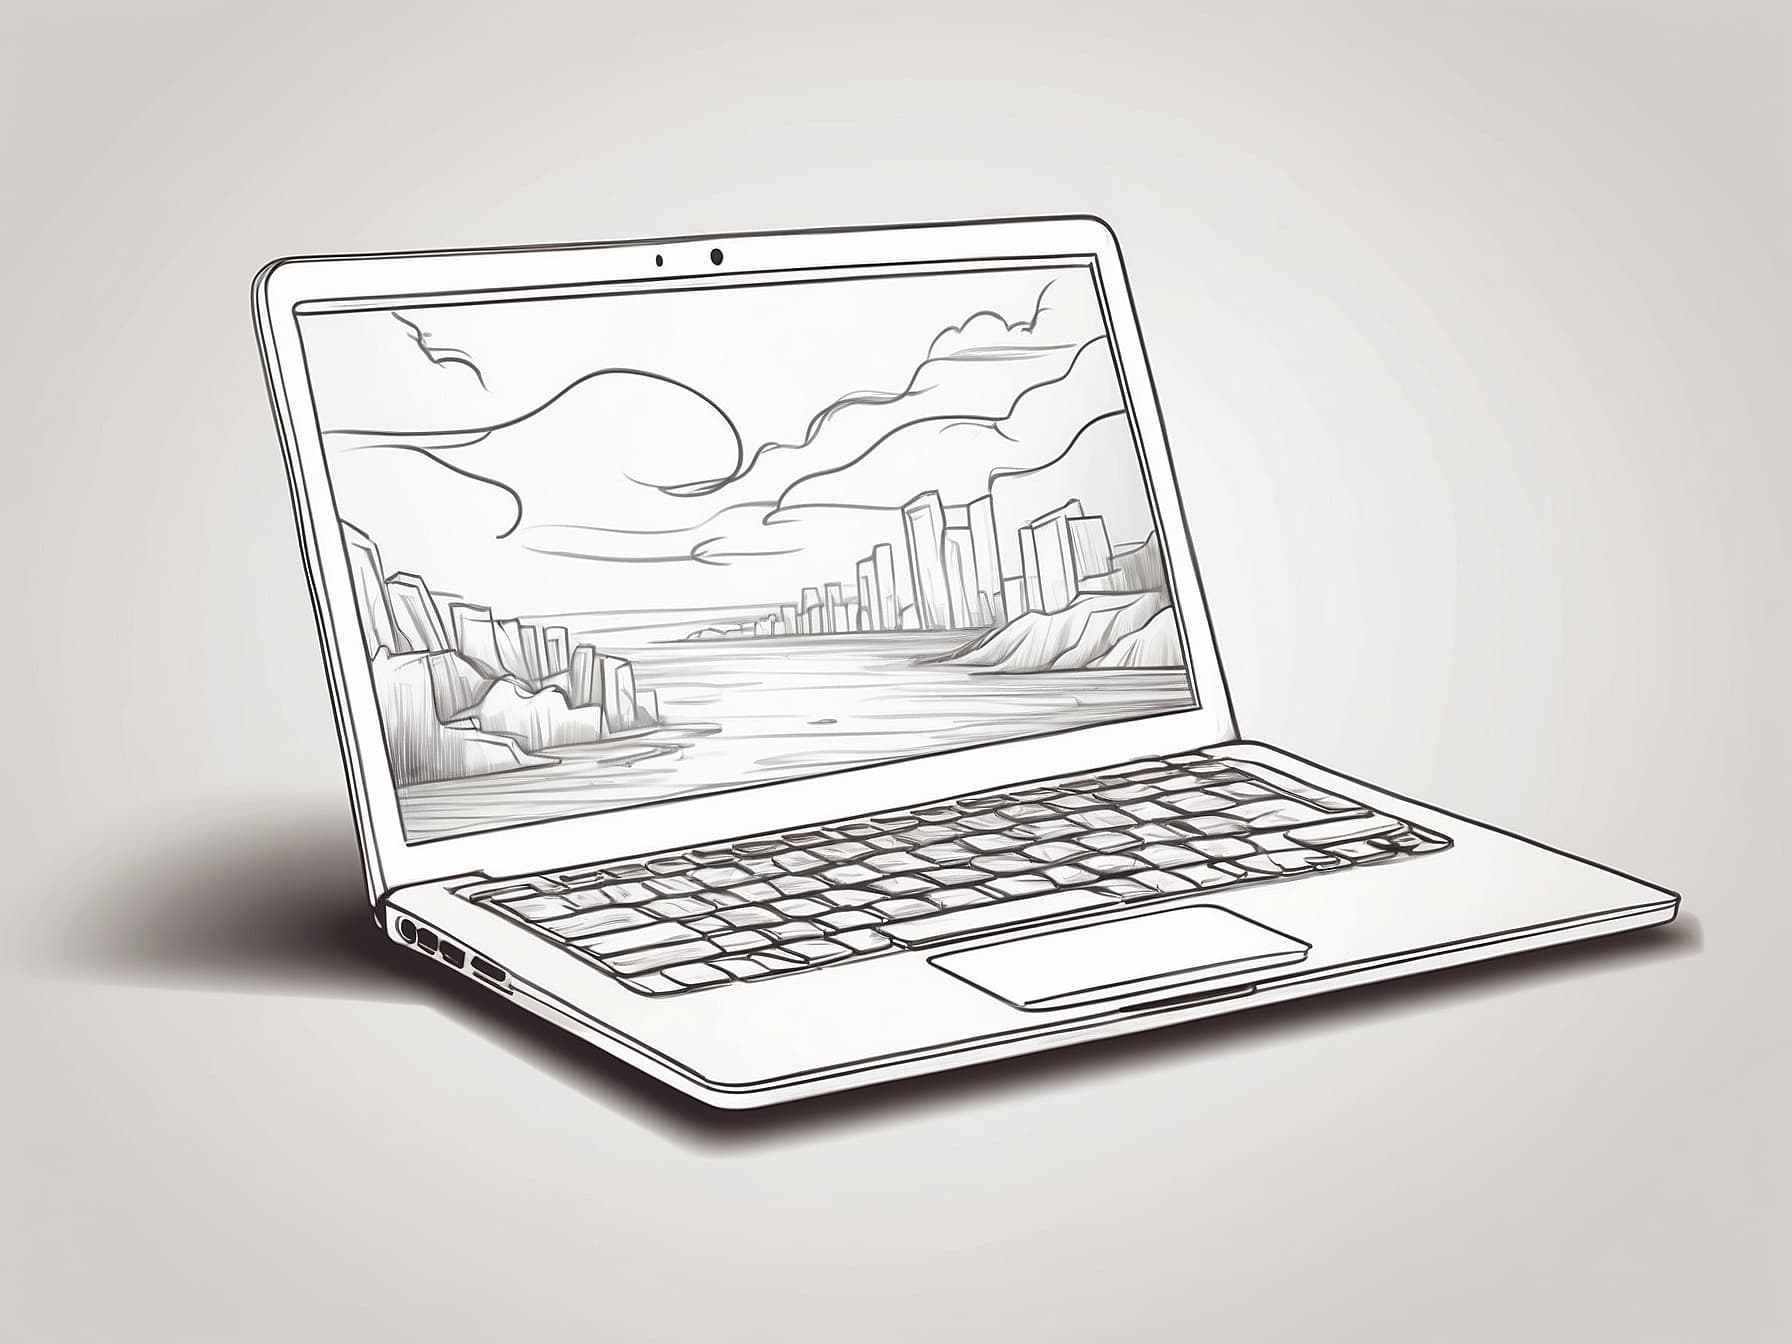 Ein Laptop, mit Bildhater Darstellung